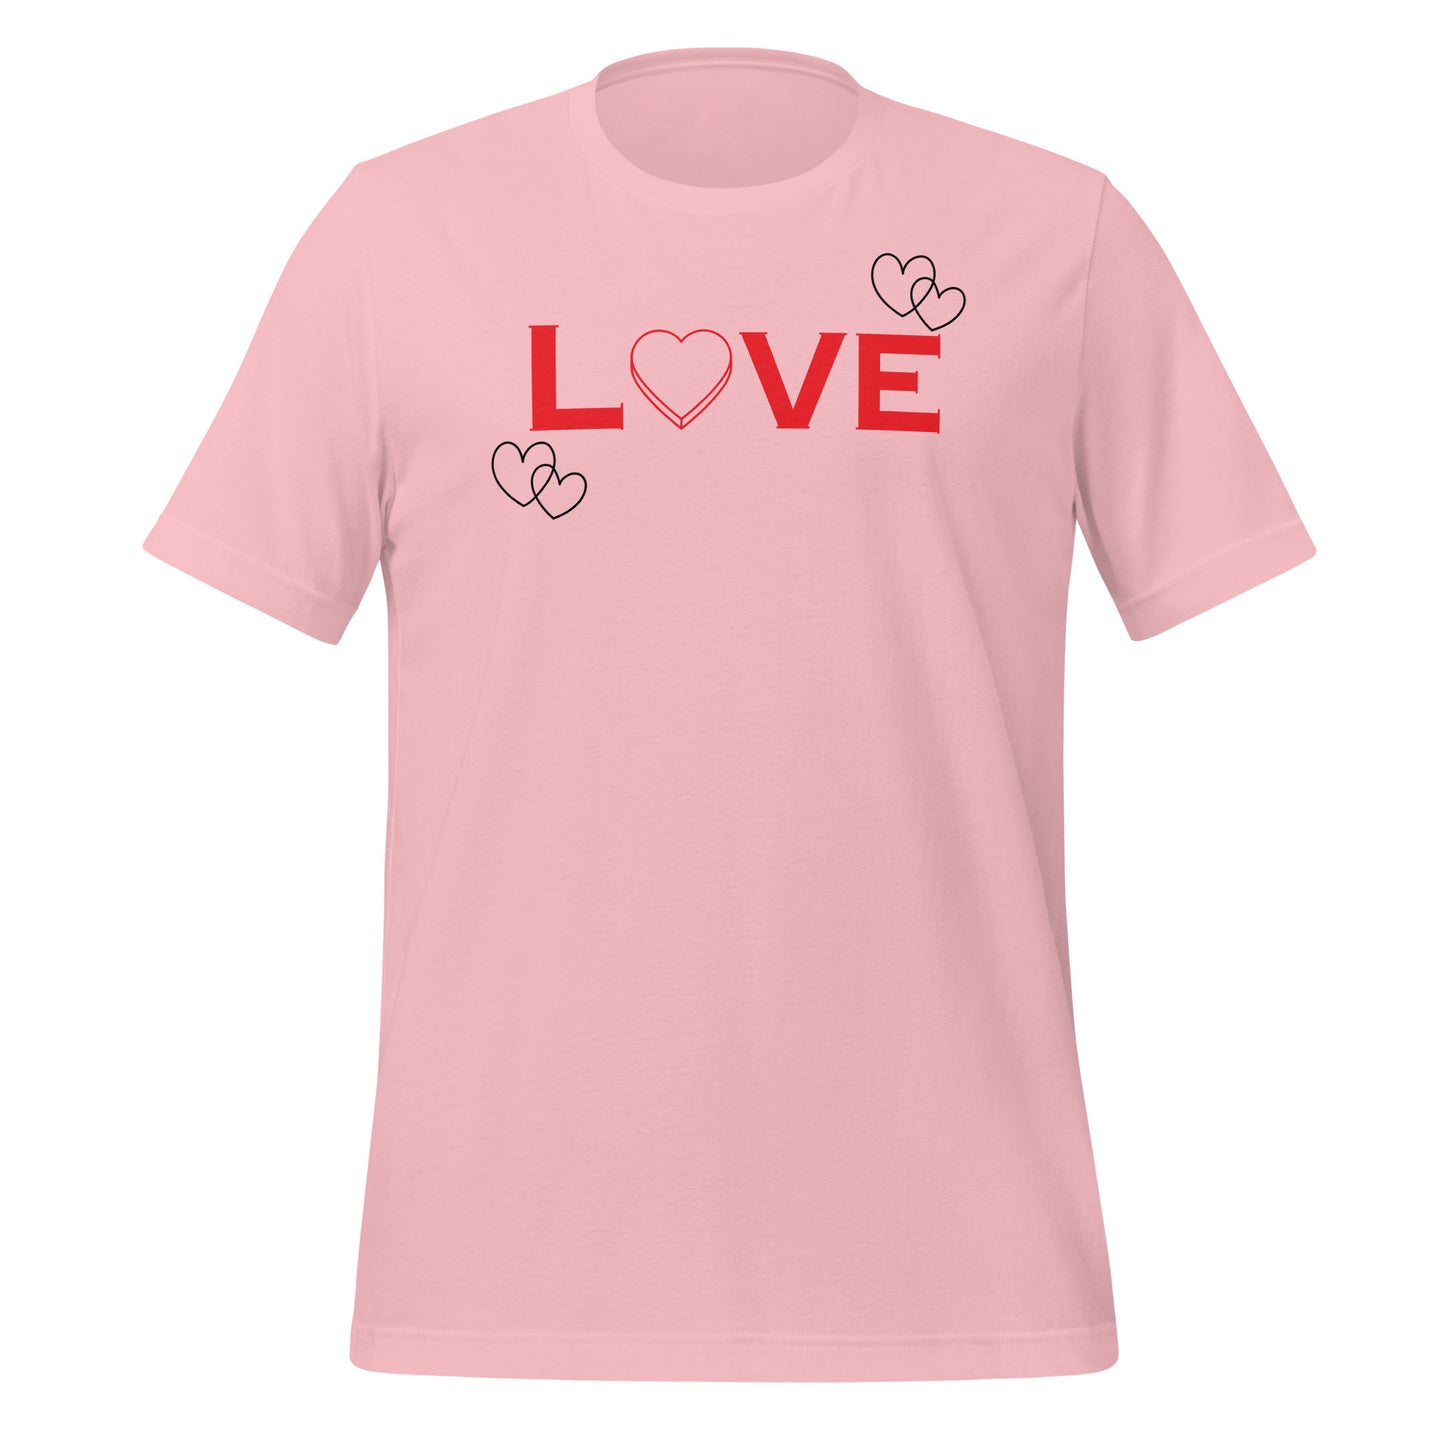 Unisex Valentines Day Love t-shirt